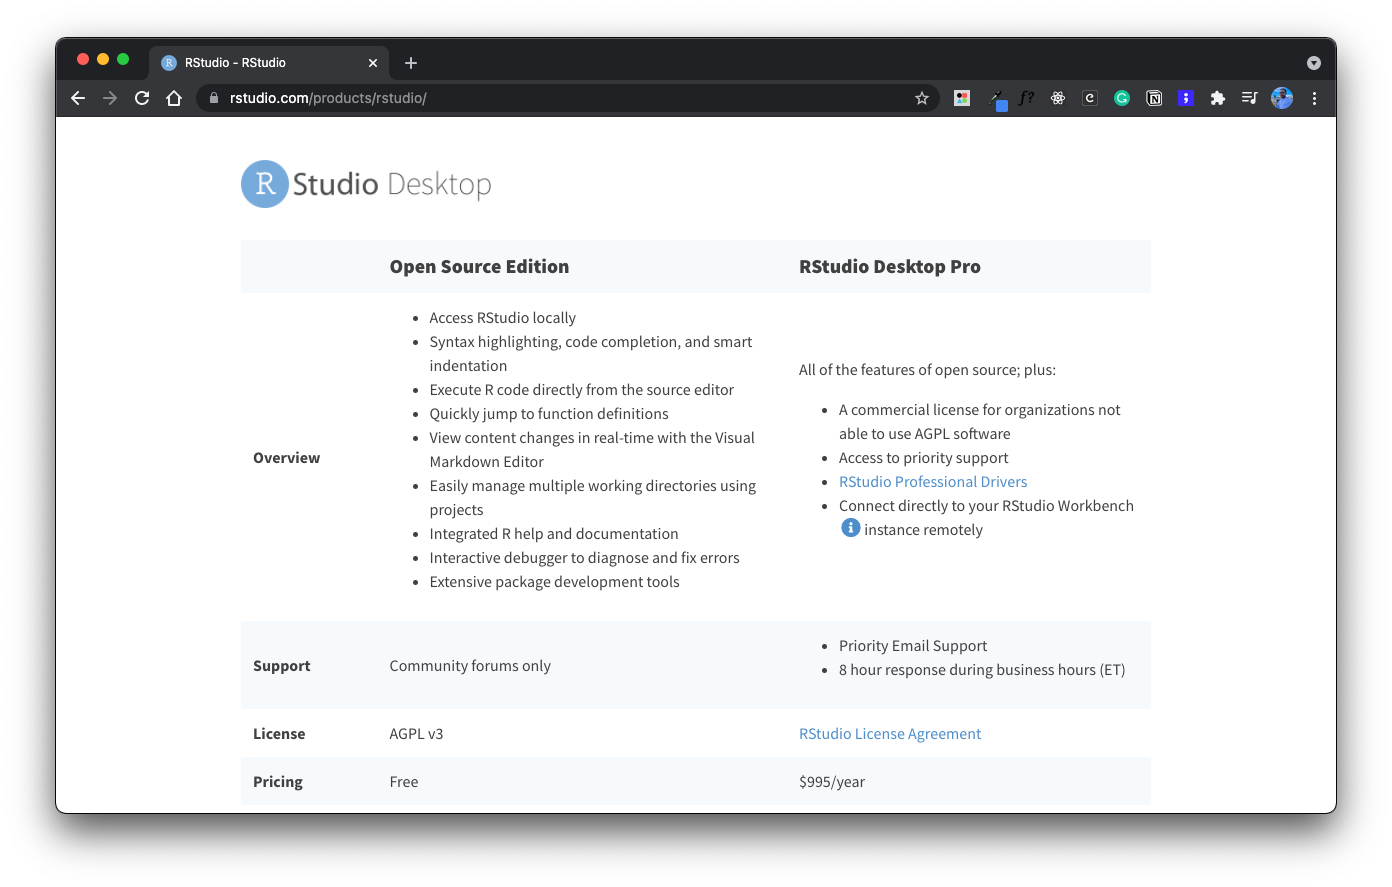 RStudio Desktop features